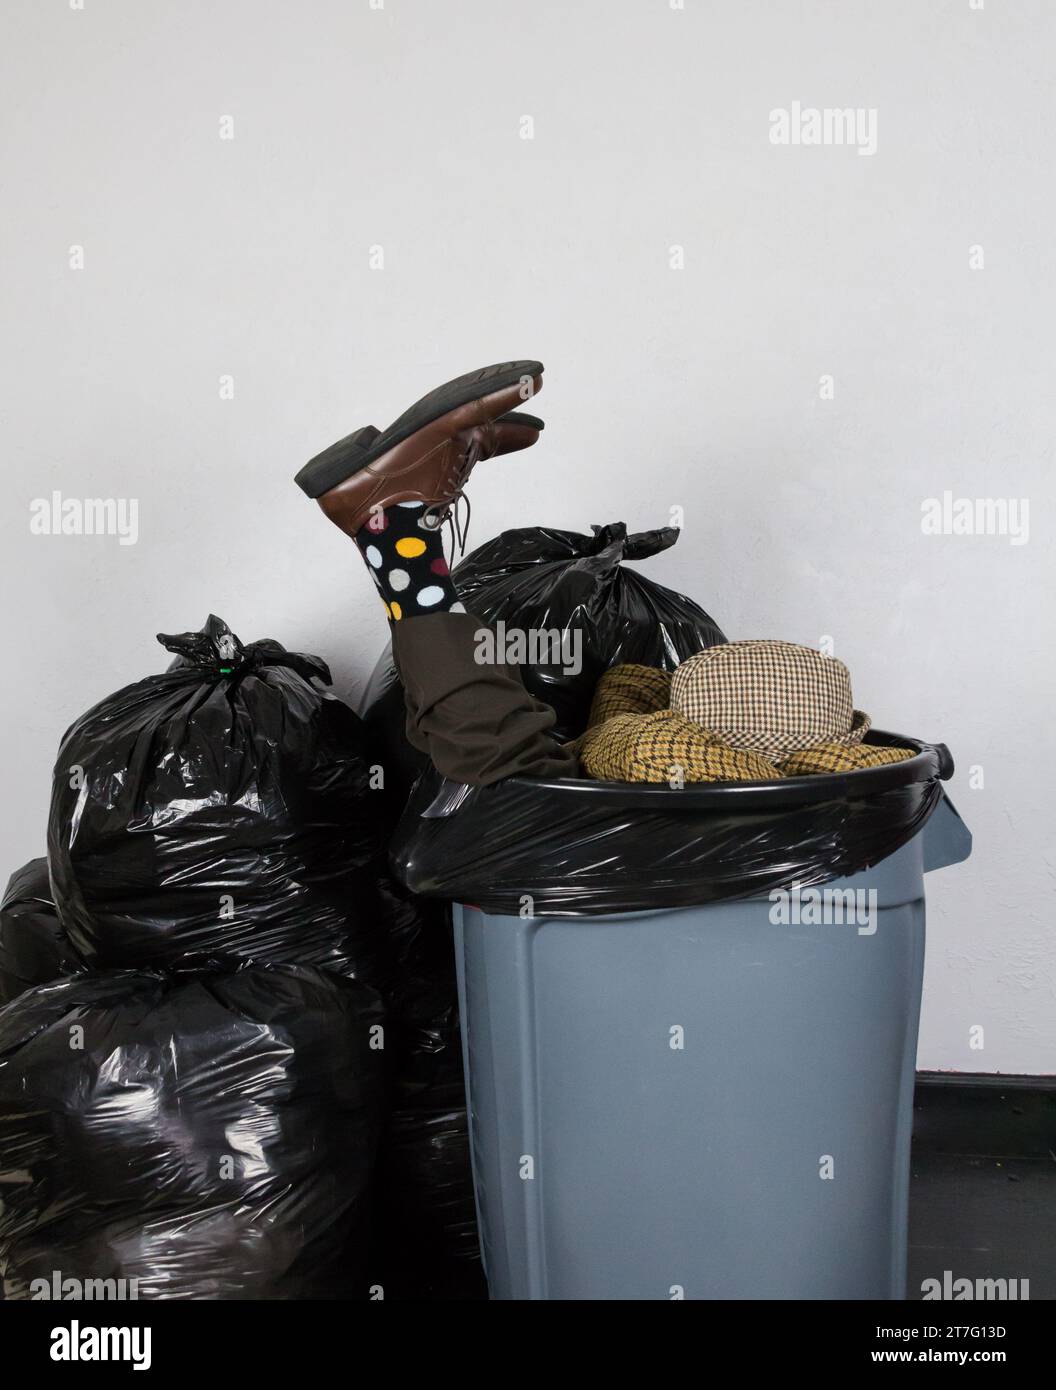 Porträt eines Mannes in Anzug und Hut und Polk-A-Dot Socken, gefüllt in einer Mülltonne, umgeben von Mülltüten. Konzept des Geschäftsmannes weggeworfen. Stockfoto